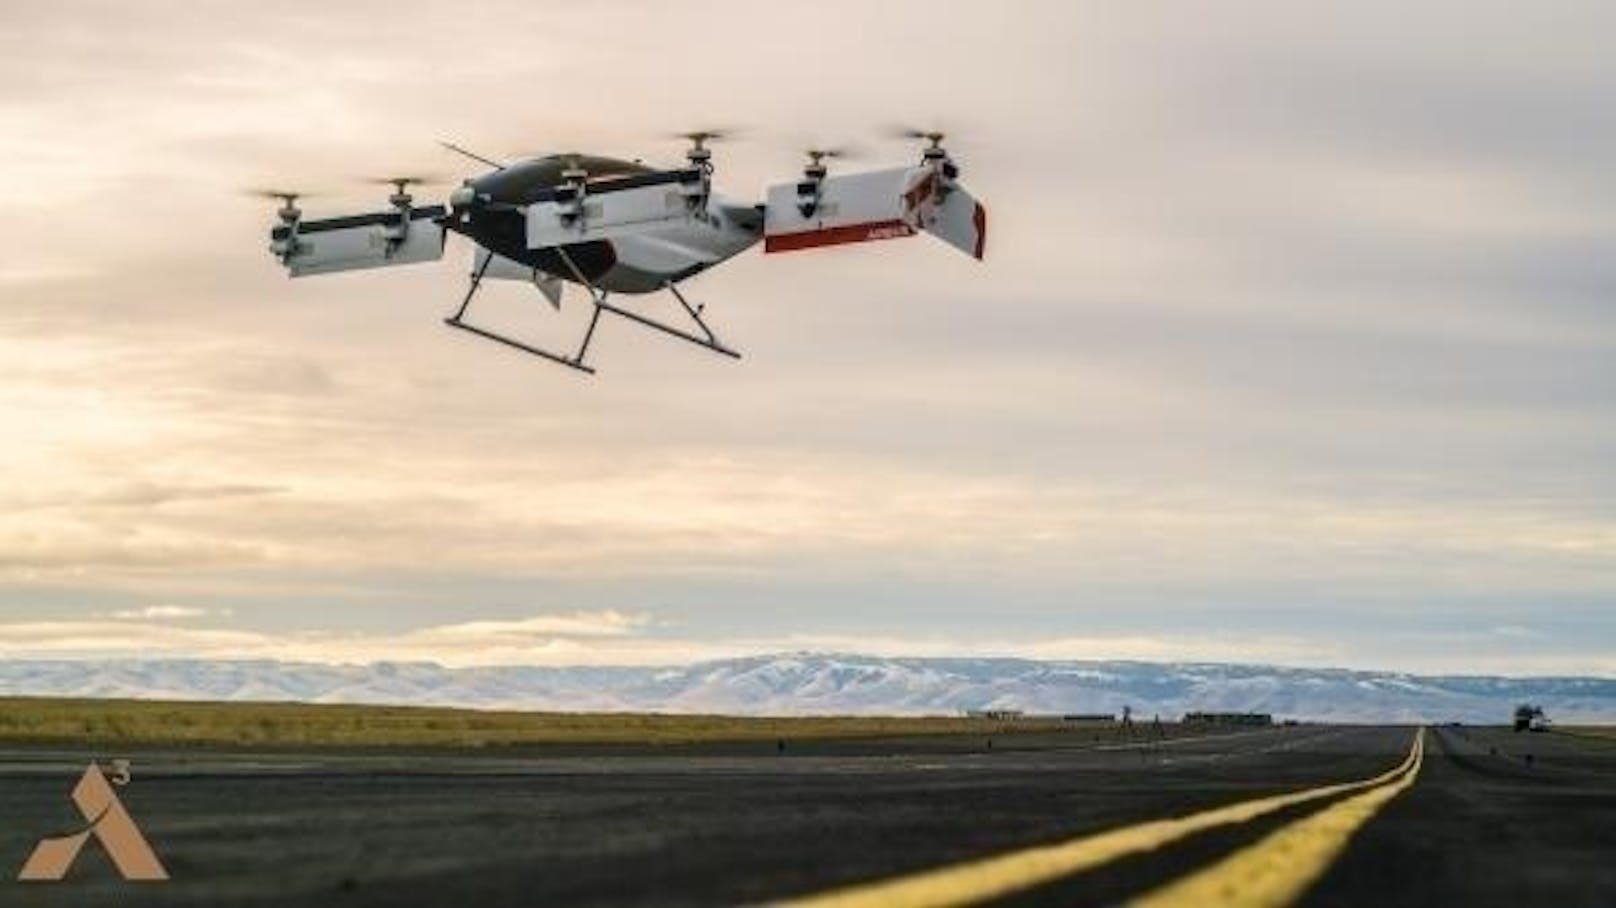 Das Drohnen-Taxi Vahana des Flugzeug-Herstellers Airbus hat seinen ersten autonomen Testflug erfolgreich absolviert, wie das Unternehmen mitteilt. Der Jungfern-Flug ohne Pilot erreichte dabei eine Höhe von fünf Metern und dauerte 53 Sekunden. Das Ziel ist es, ein ganzes Netzwerk von autonomen Passagier-Drohnen aufzubauen. Bis es jedoch so weit ist, müssen noch viele weitere Testflüge durchgeführt werden.